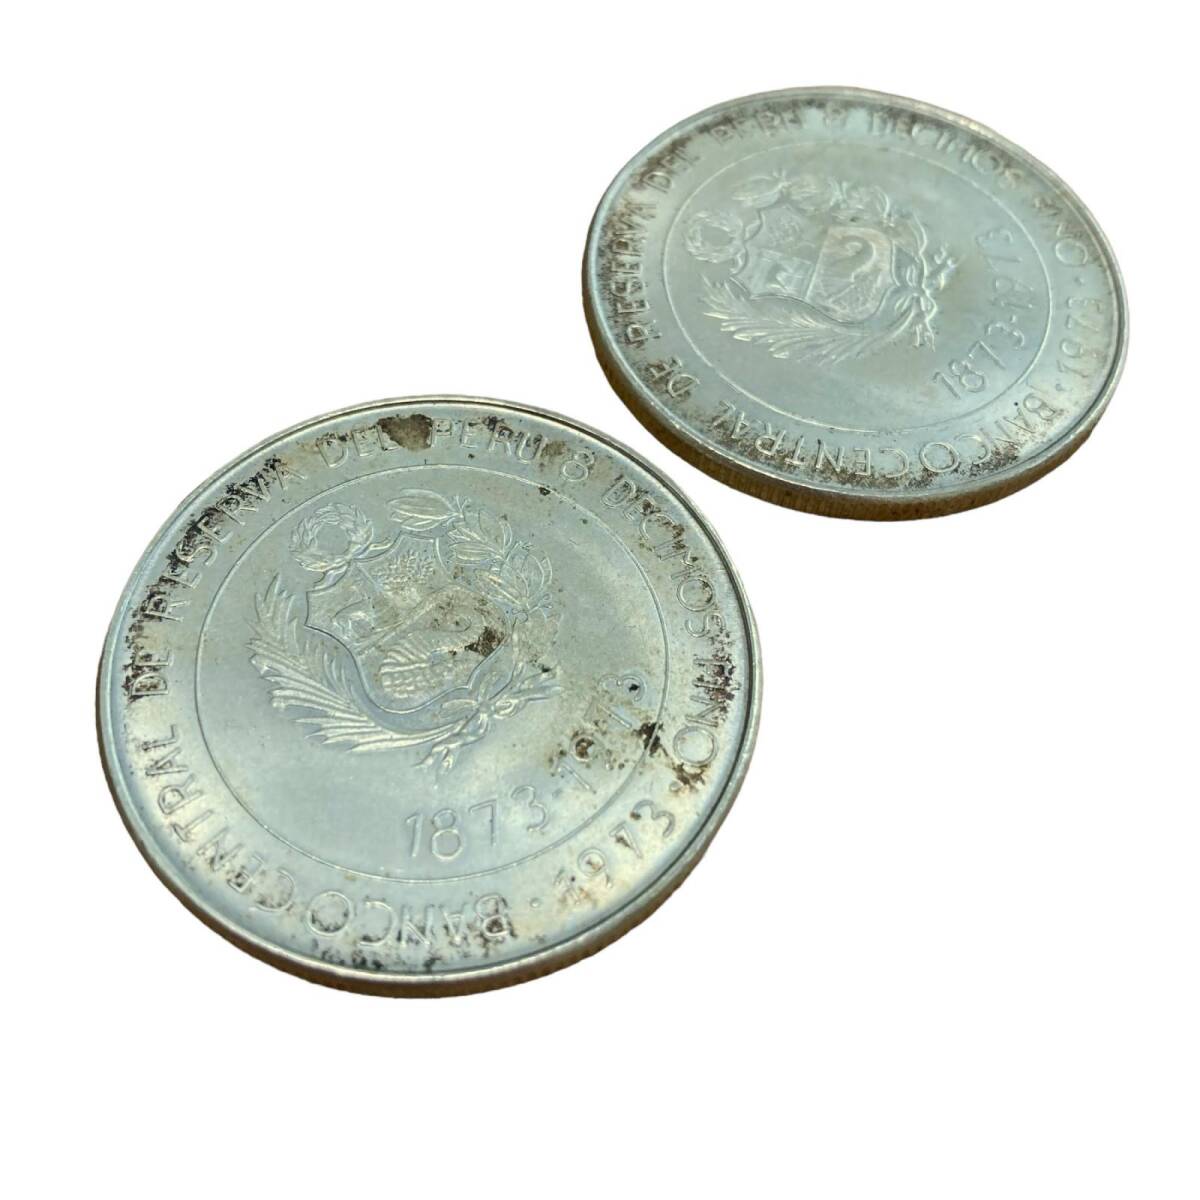 日本ペルー修好100周年記念銀貨 100ソル ペルー銀貨 1873-1973 【2枚】 コイン_画像4